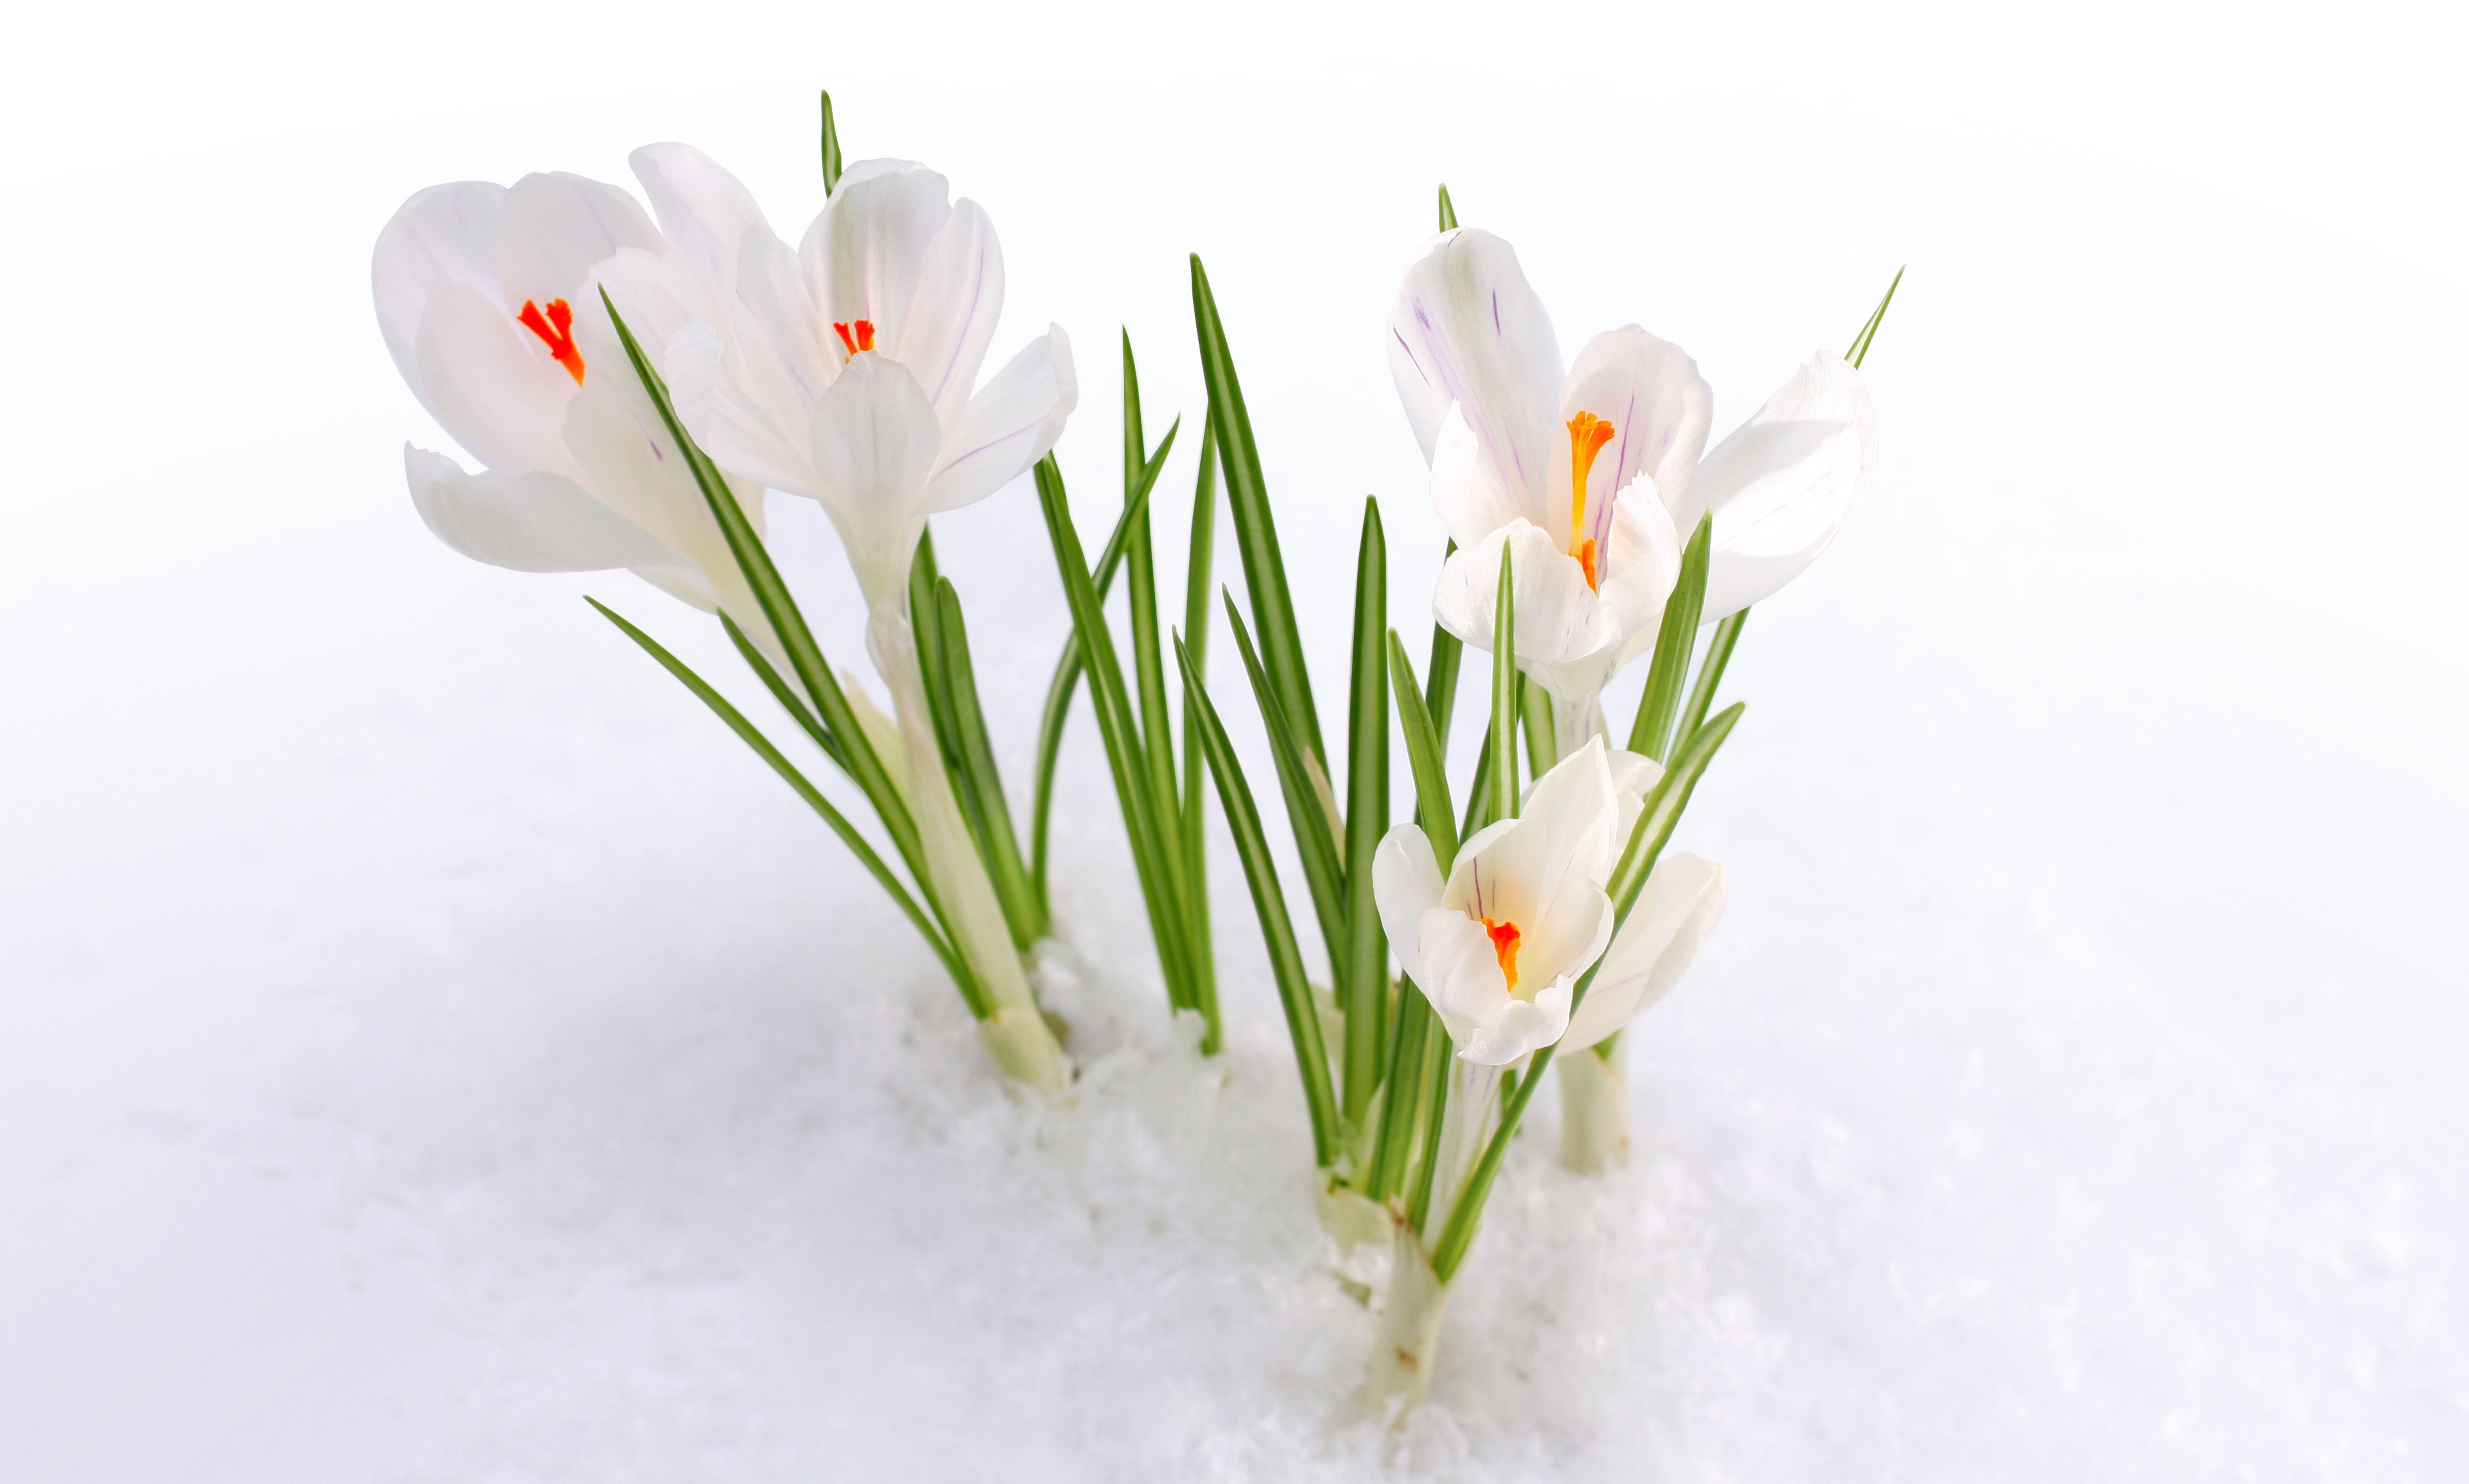 Hoa mùa xuân: Khám phá vẻ đẹp của những loài hoa đặc trưng của mùa xuân, như hoa đào, hoa mai và hoa anh đào. Chúng sẽ làm cho bạn cảm thấy sảng khoái và hạnh phúc.